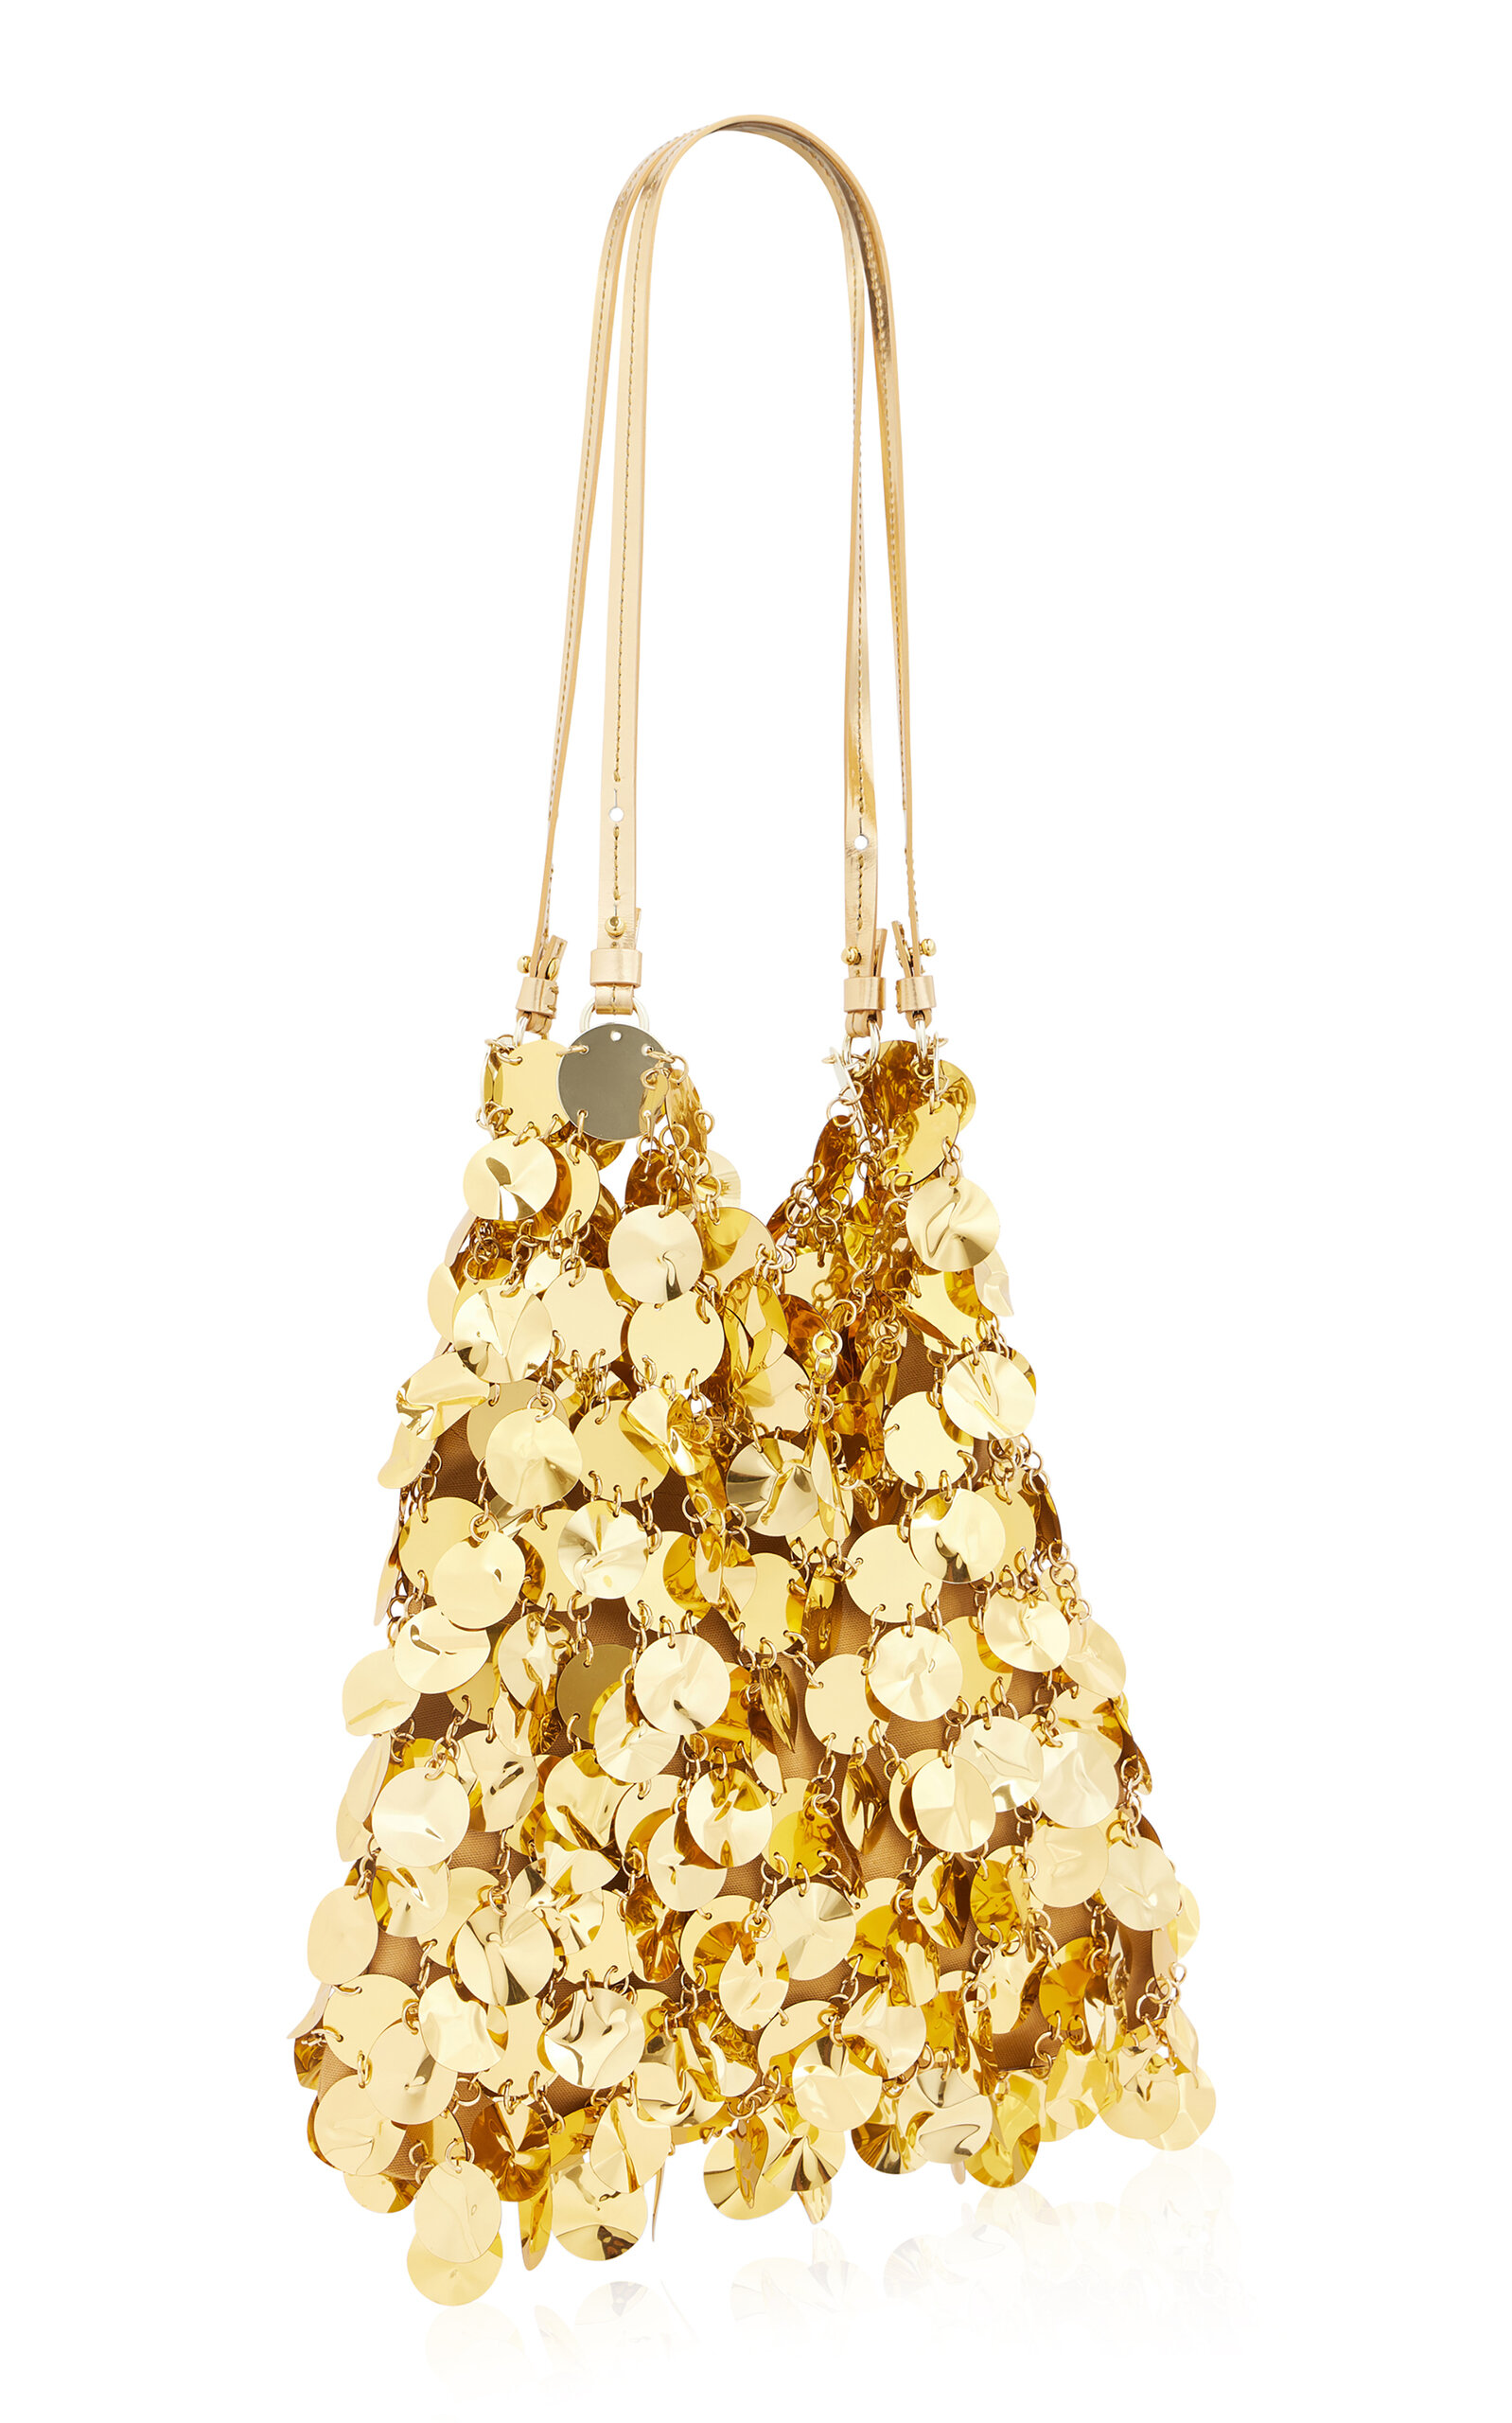 XL Sparkle Gold-Tone Paillette Hobo bag